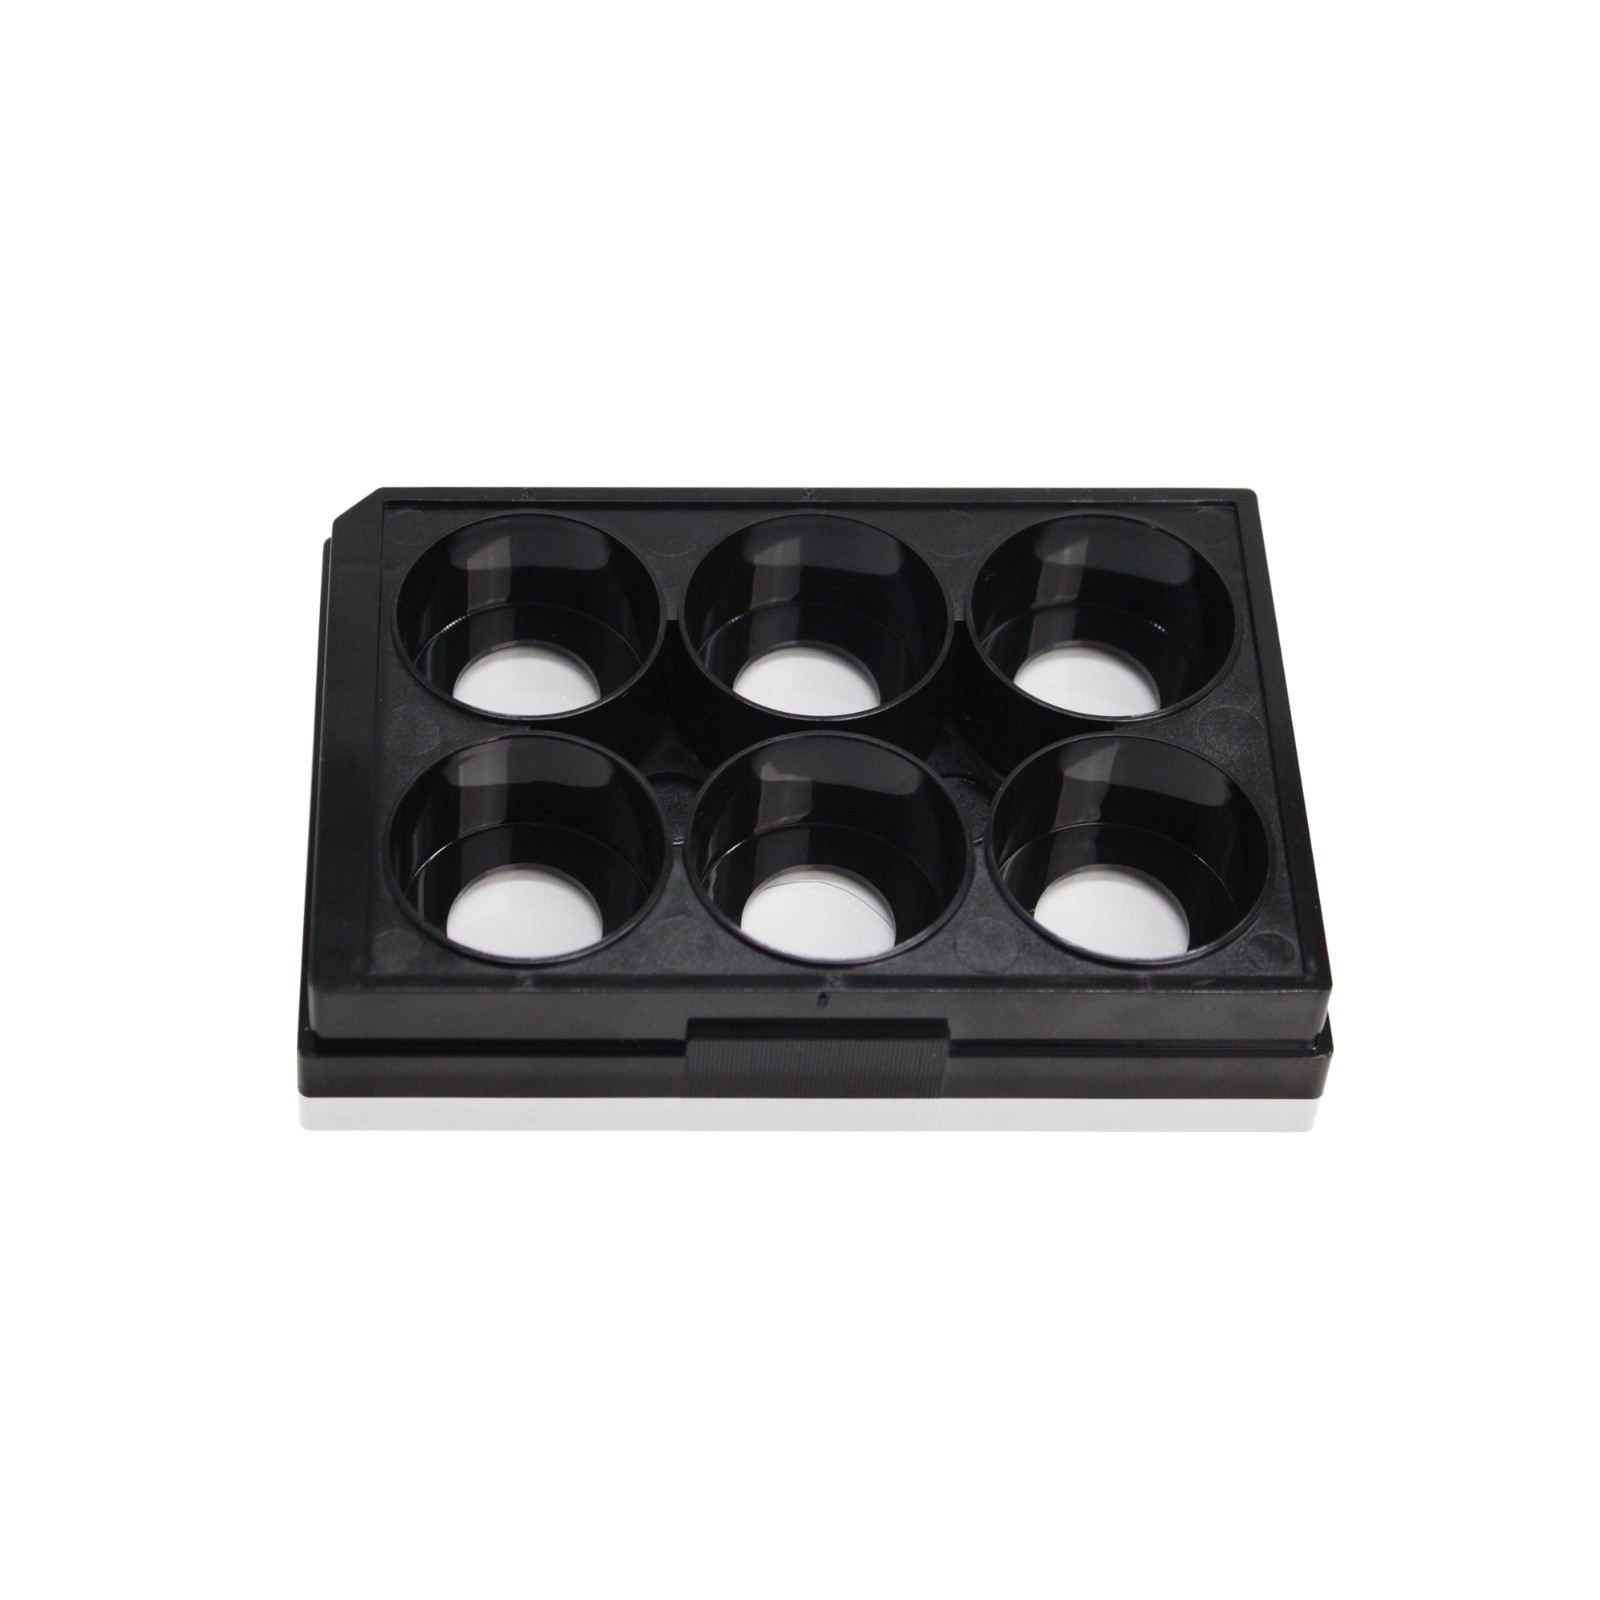 6孔玻底/共聚焦培养板(玻底：20mm) 黑色,无菌包装